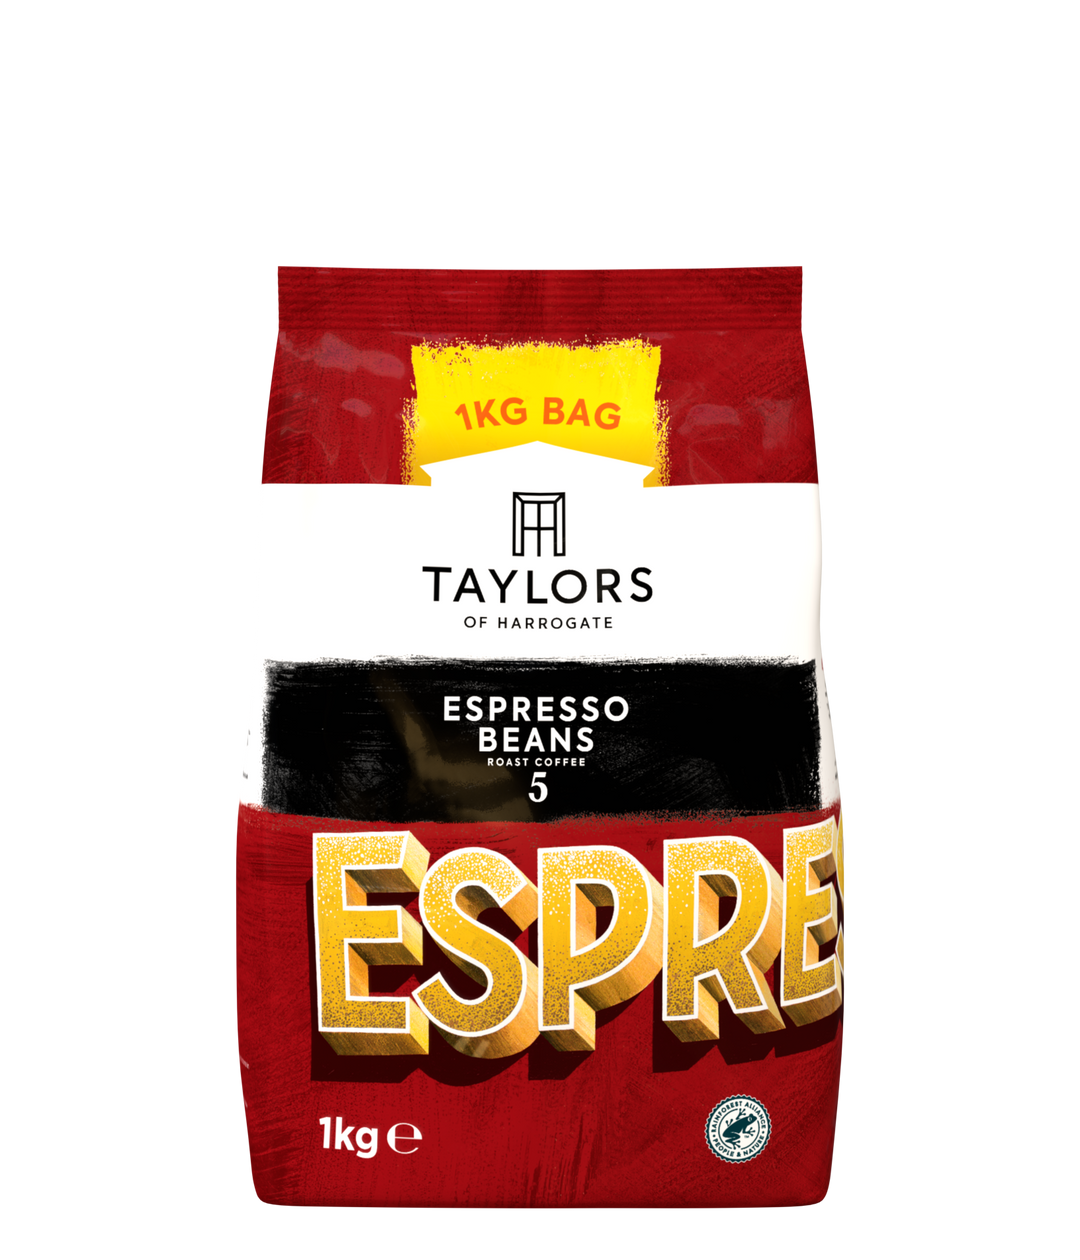 Taylors of Harrogate Espresso Coffee Beans 1KG